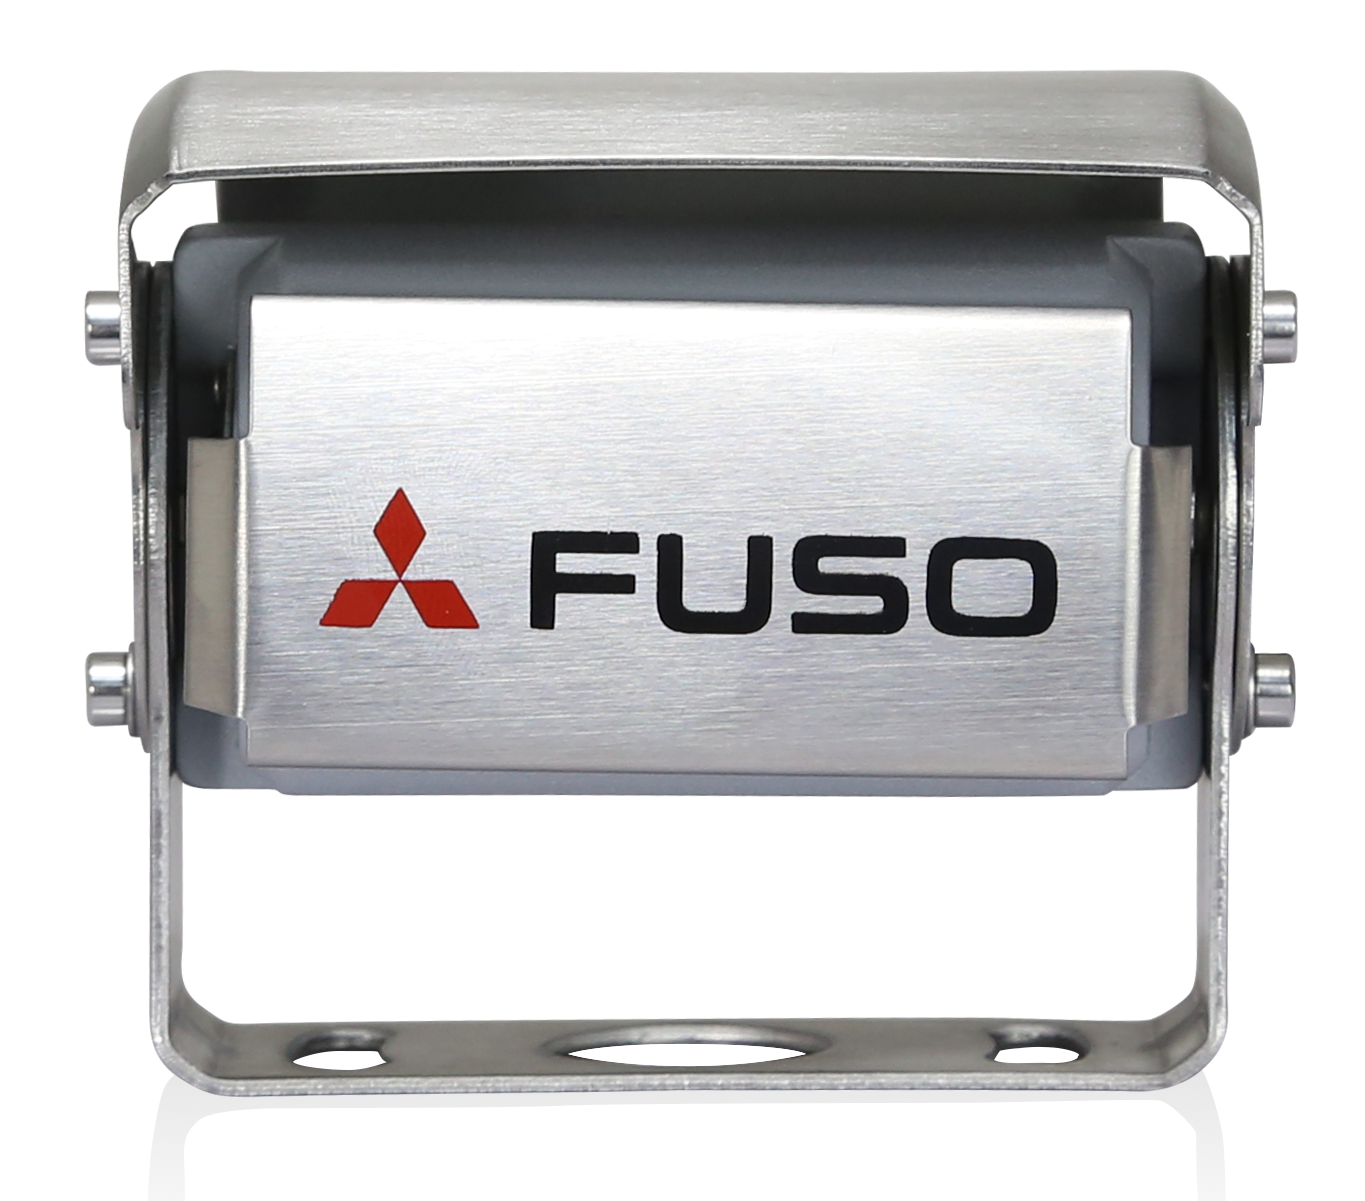 De achteruitrijcamera van FUSO is een krachtig product dat de voordelen van het beste zicht en maximale veiligheid combineert. Het heeft een geïntegreerde microfoon die zorgt voor een betere waarneming van het gebied achter het voertuig. Bij duisternis wordt de kleur van het display automatisch gewijzigd om de bestuurder optimaal zicht te bieden. Het systeem kan worden gebruikt met 12 en 24 V en voldoet aan de strengste FUSO-testvereisten. De camera is waterdicht tot IP69K. Het scherm heeft een resolutie van 800x480x3 (RGB).